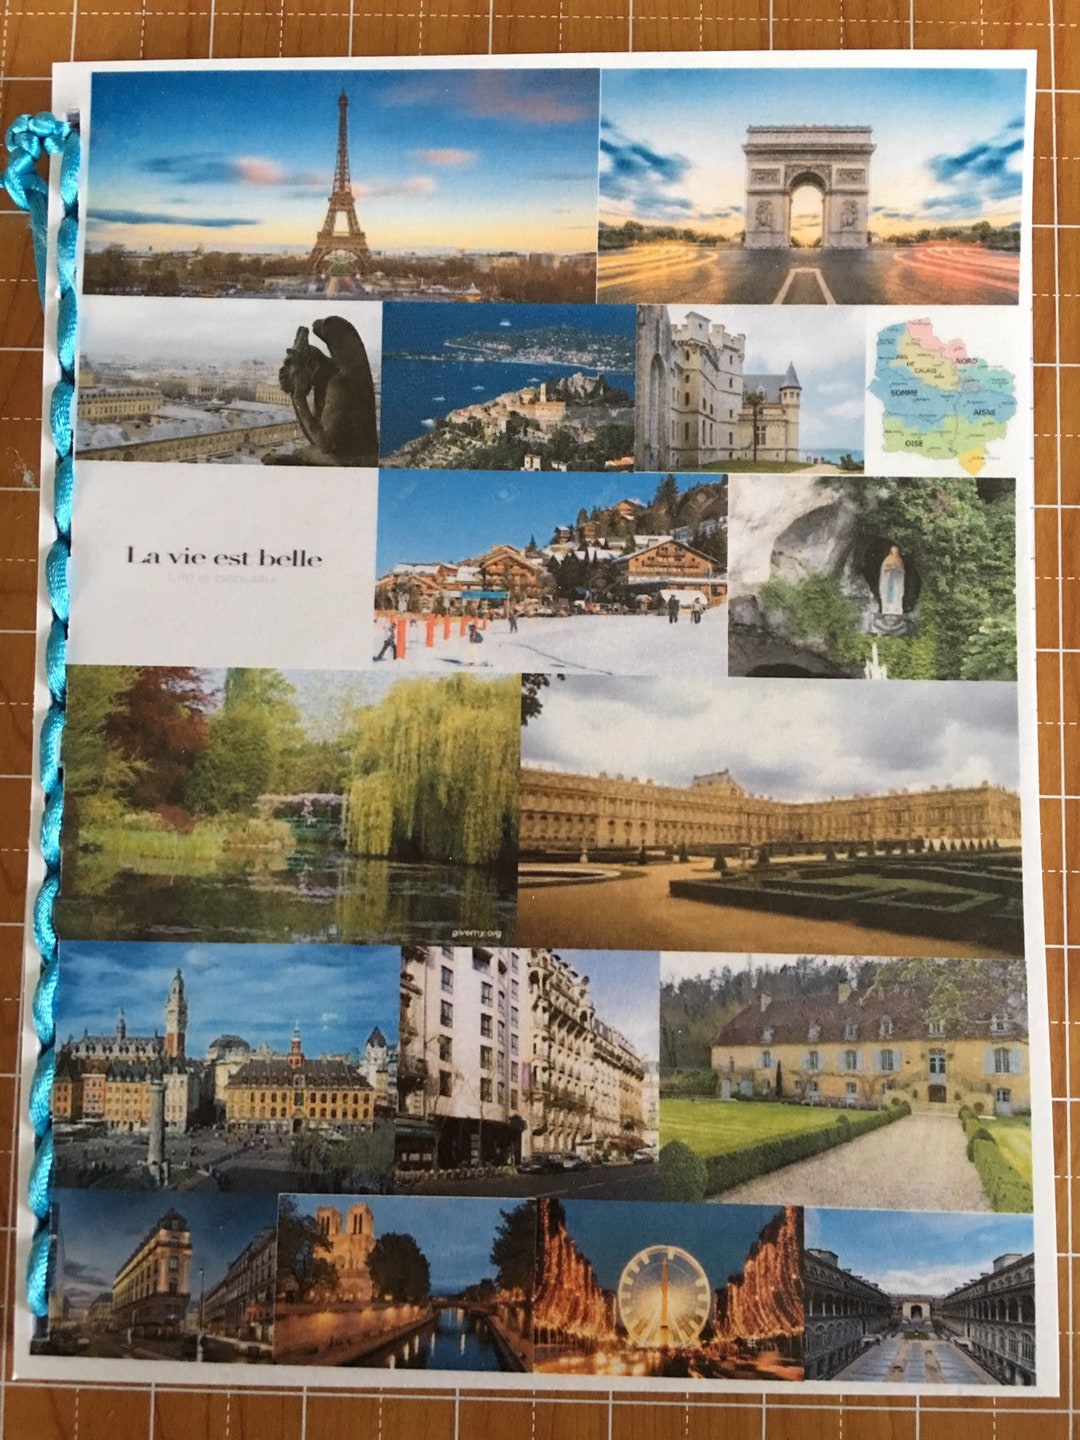 Travel Journal Sketchbook Share: Ireland in Gouache on Paper – Monaluna Life